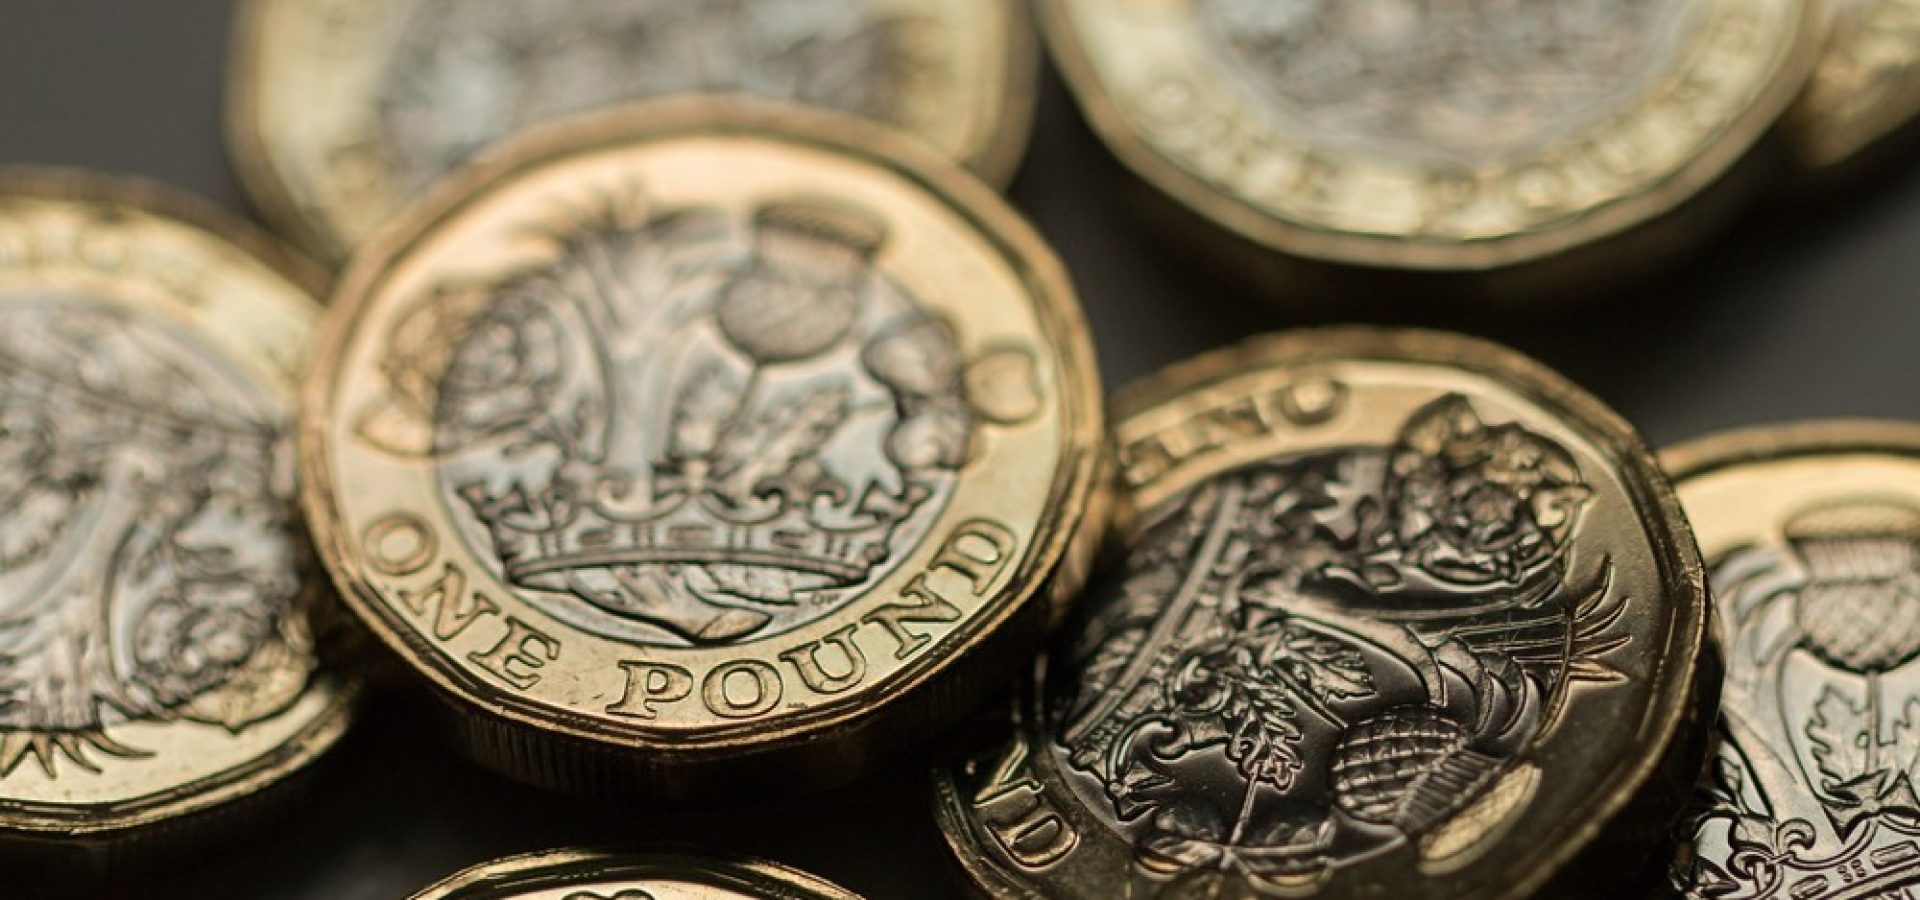 Wibest – Pound Money: Pound sterling coins.